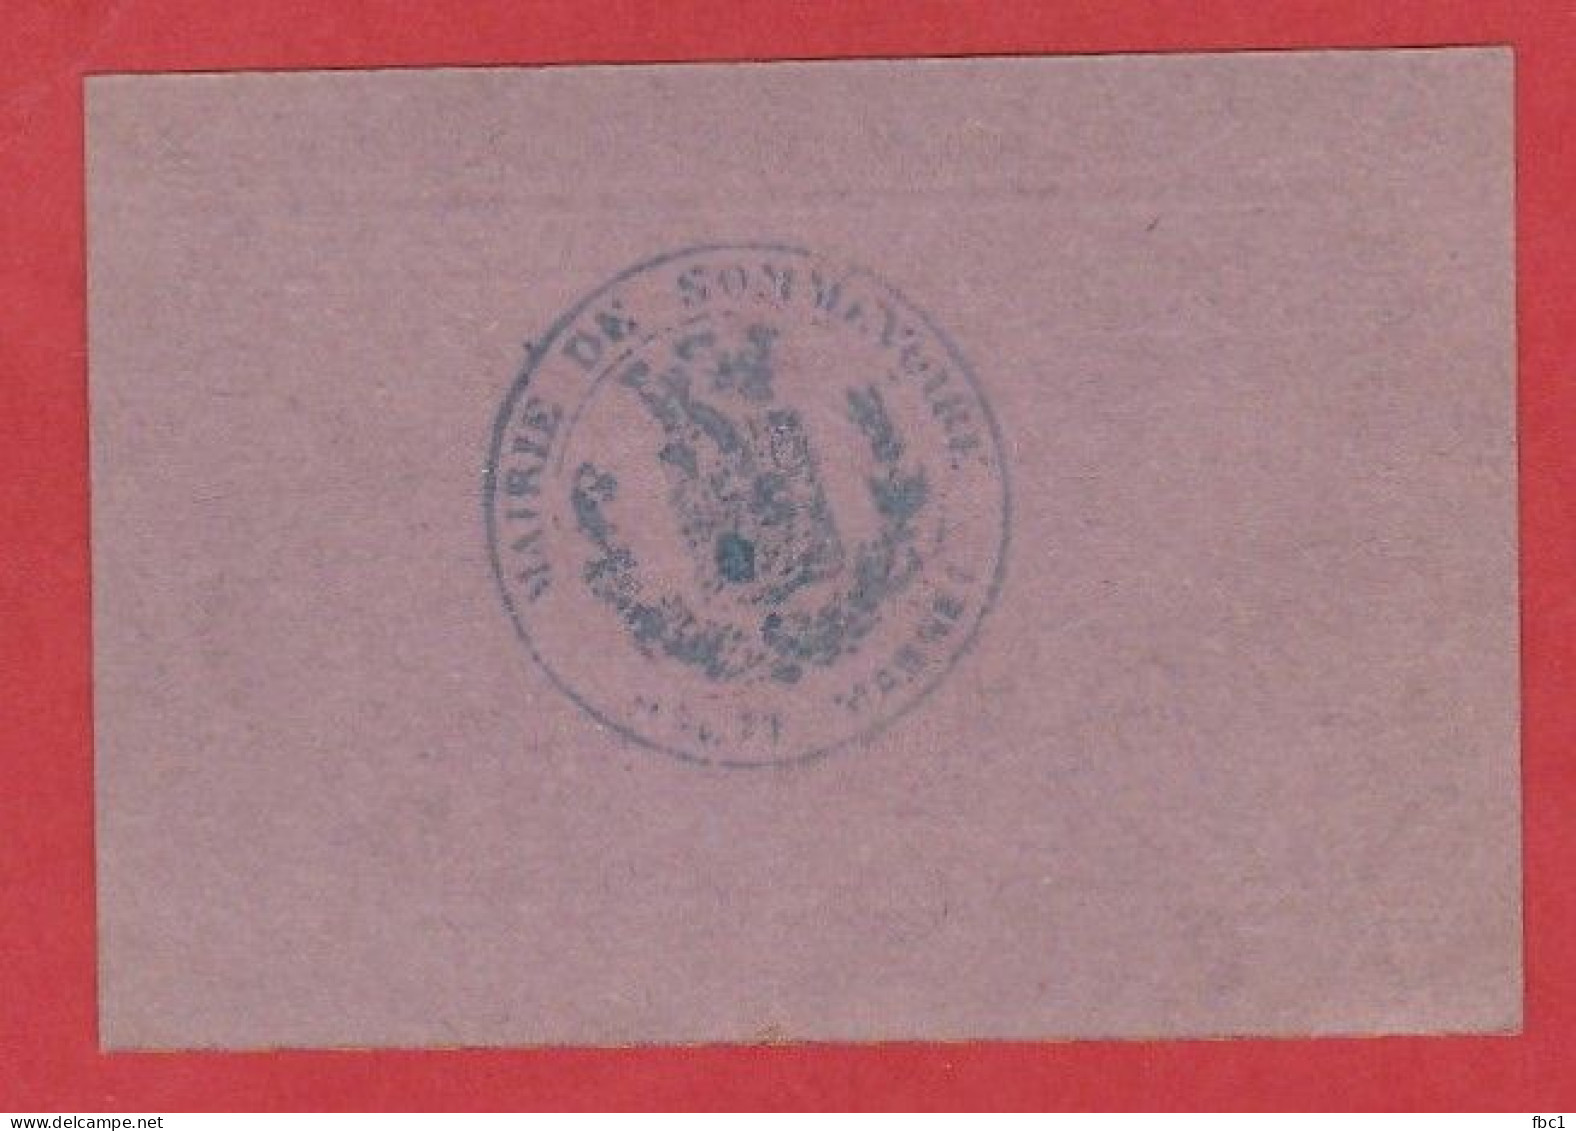 Haute-Marne - Bourg De Sommevoire - Billet Communal De 0,25 Centimes (Emission De Septembre 1917) - Notgeld